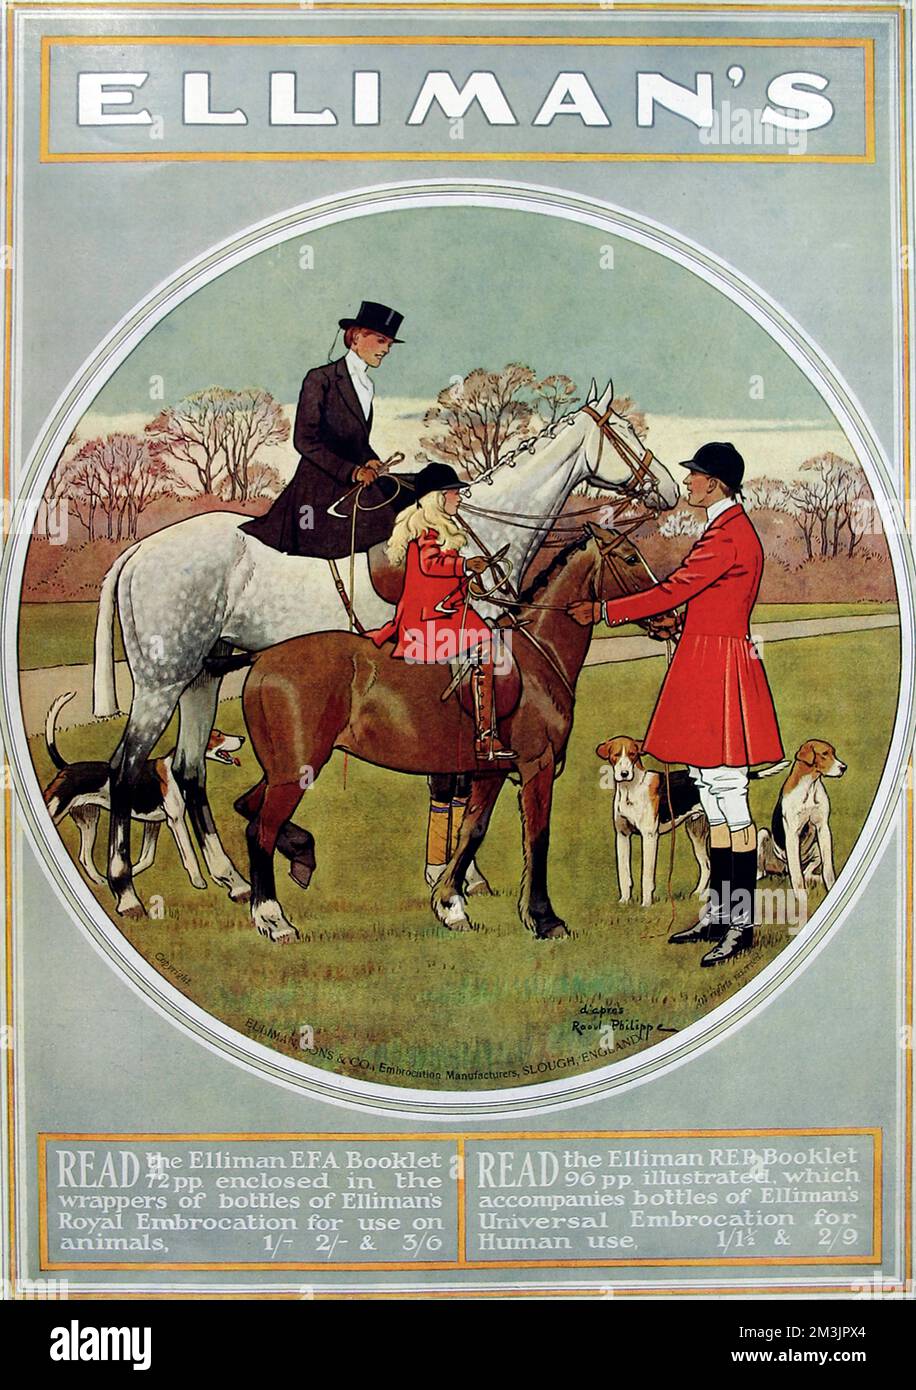 Ellimans-Embrokation zeigt eine Jagdszene. Ellimans war ein bekanntes Mittel zur Linderung von Gelenkschmerzen mit Formeln sowohl für Pferde als auch für Menschen. Datum: 1914 Stockfoto